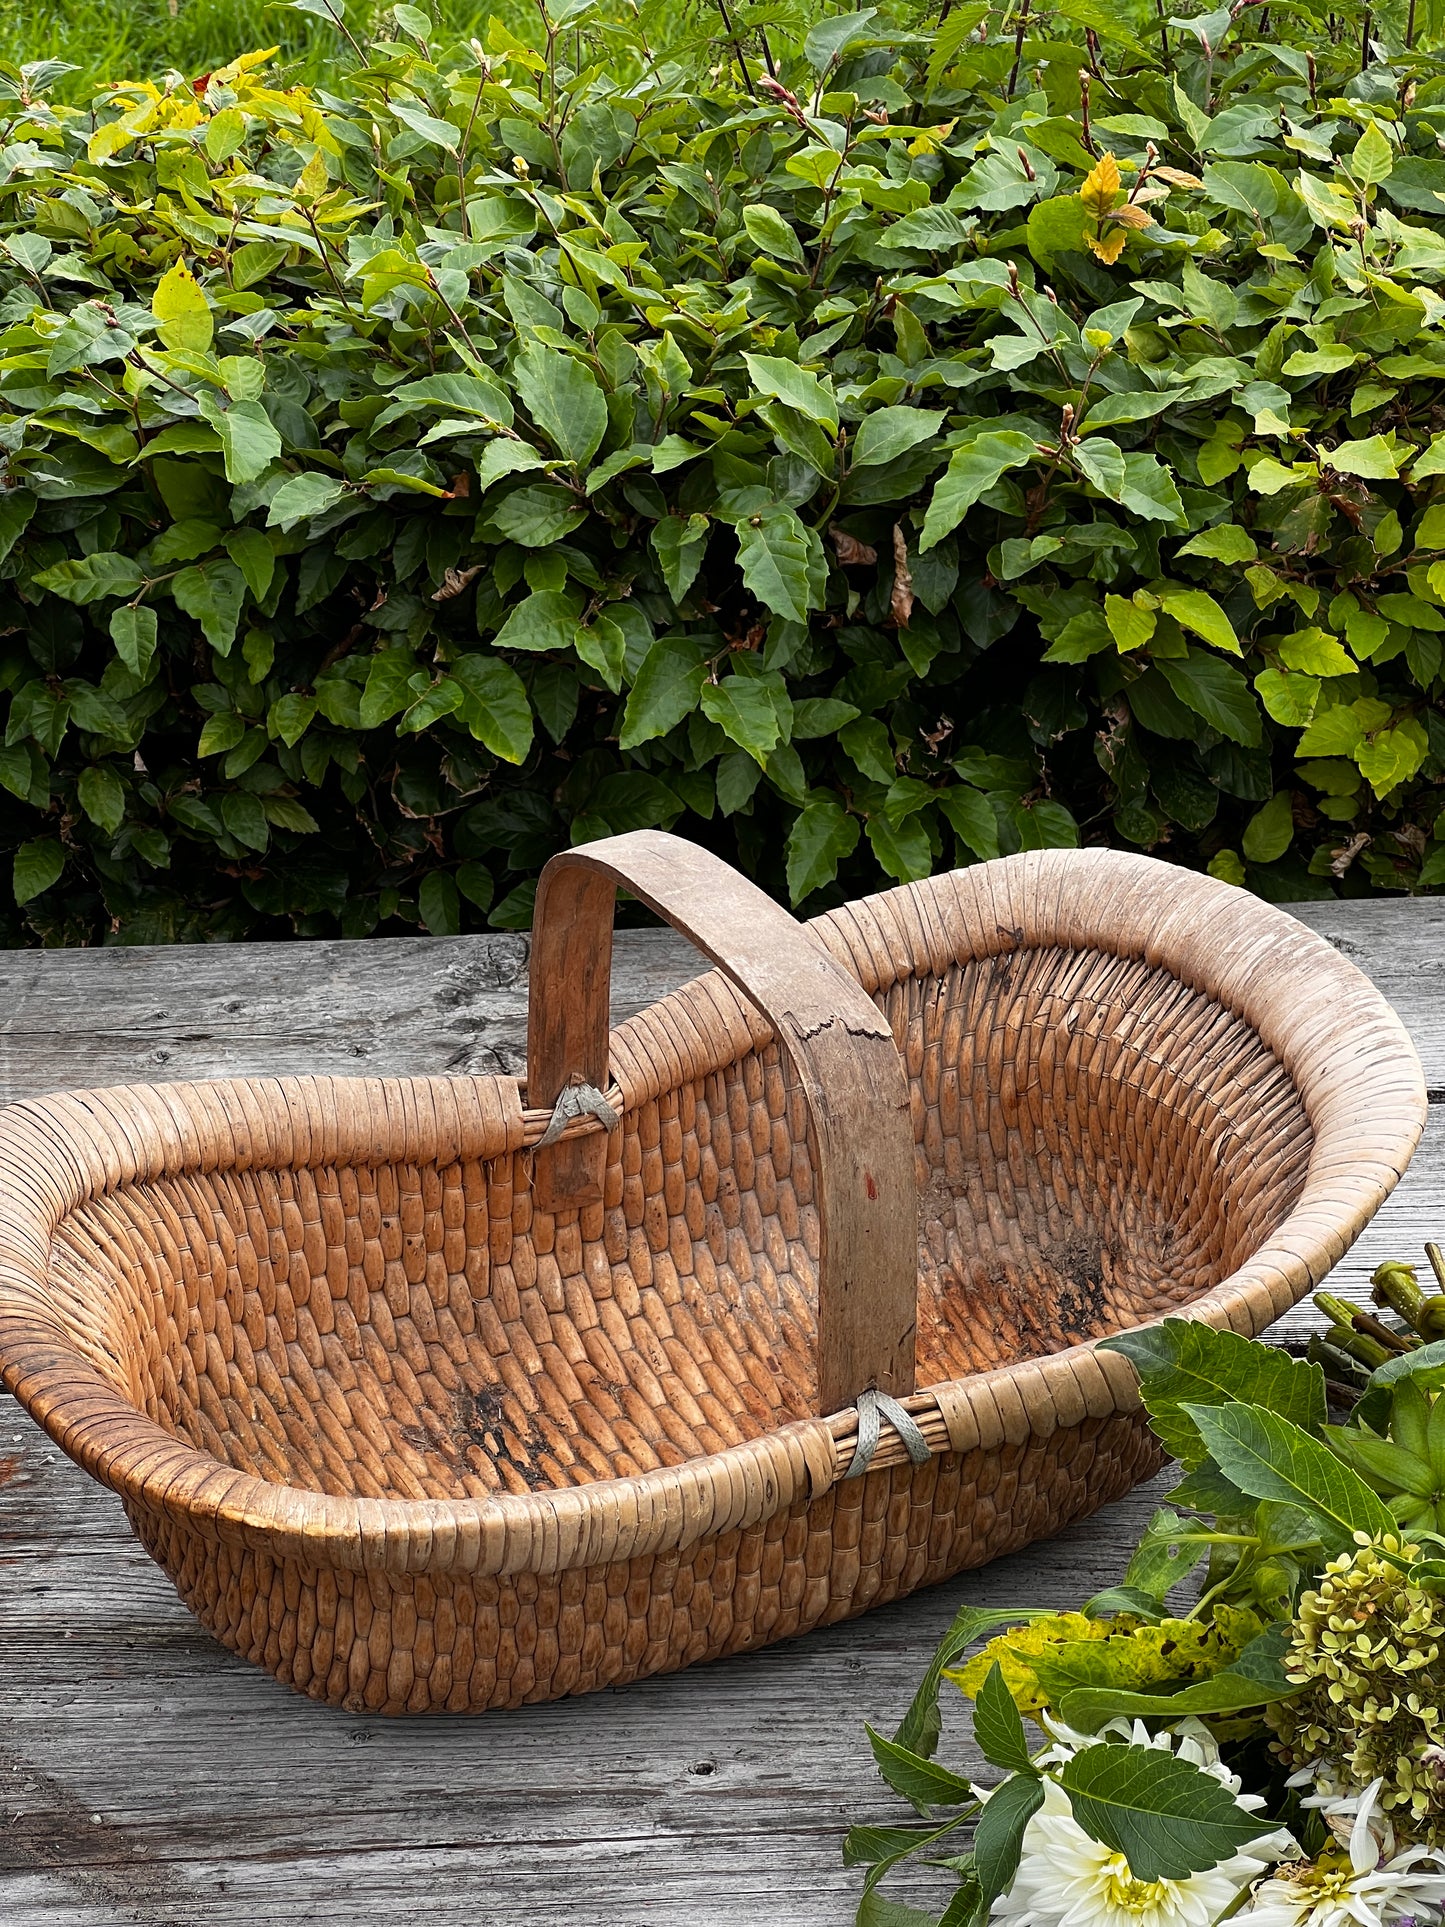 Tea picking basket